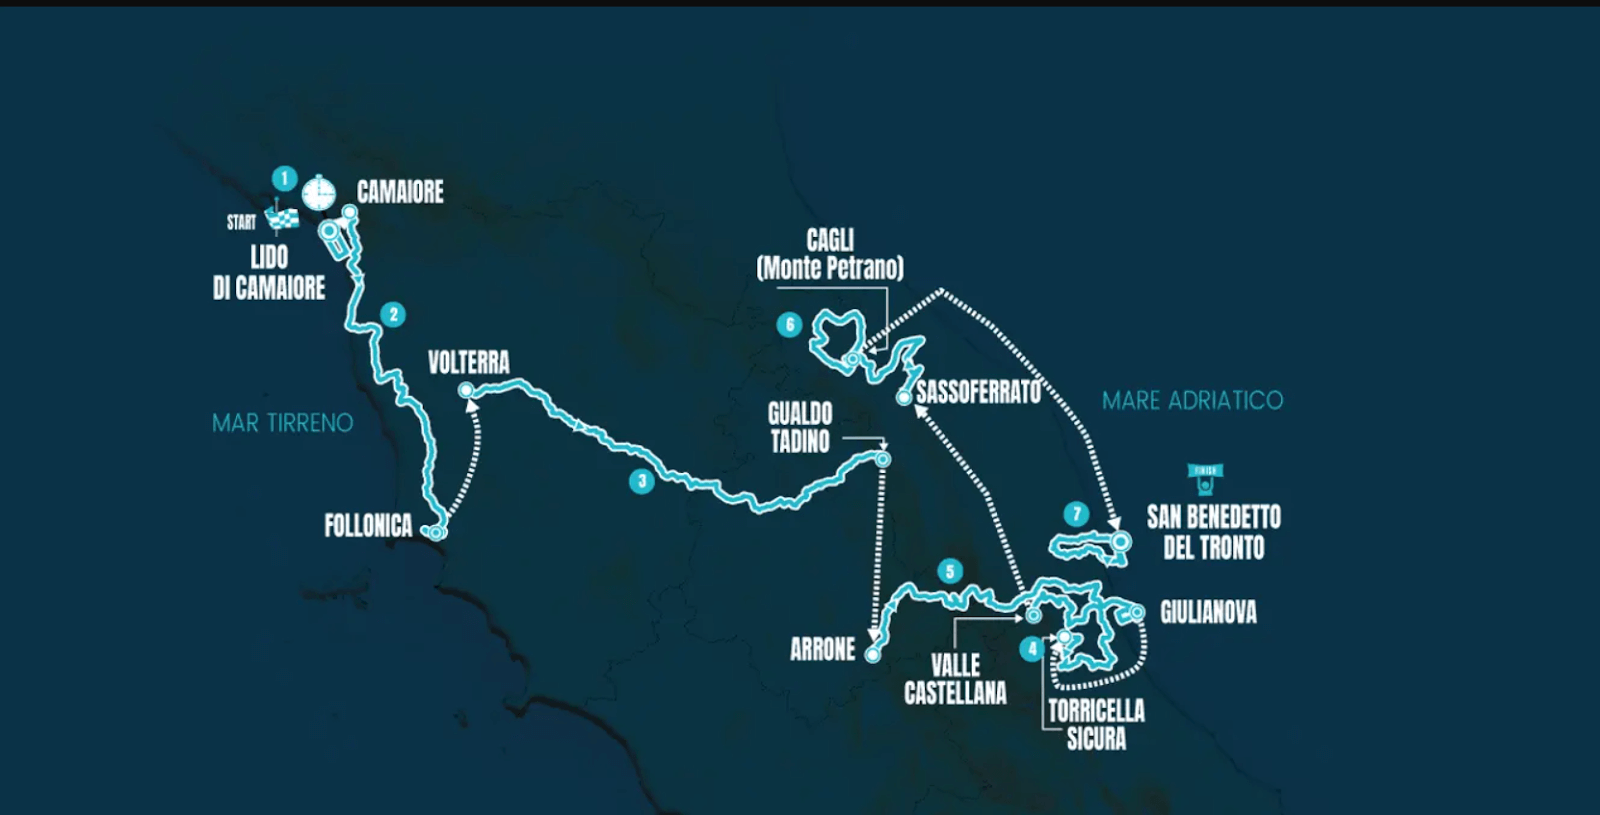 The Route-of-Tirreno-Adriatico